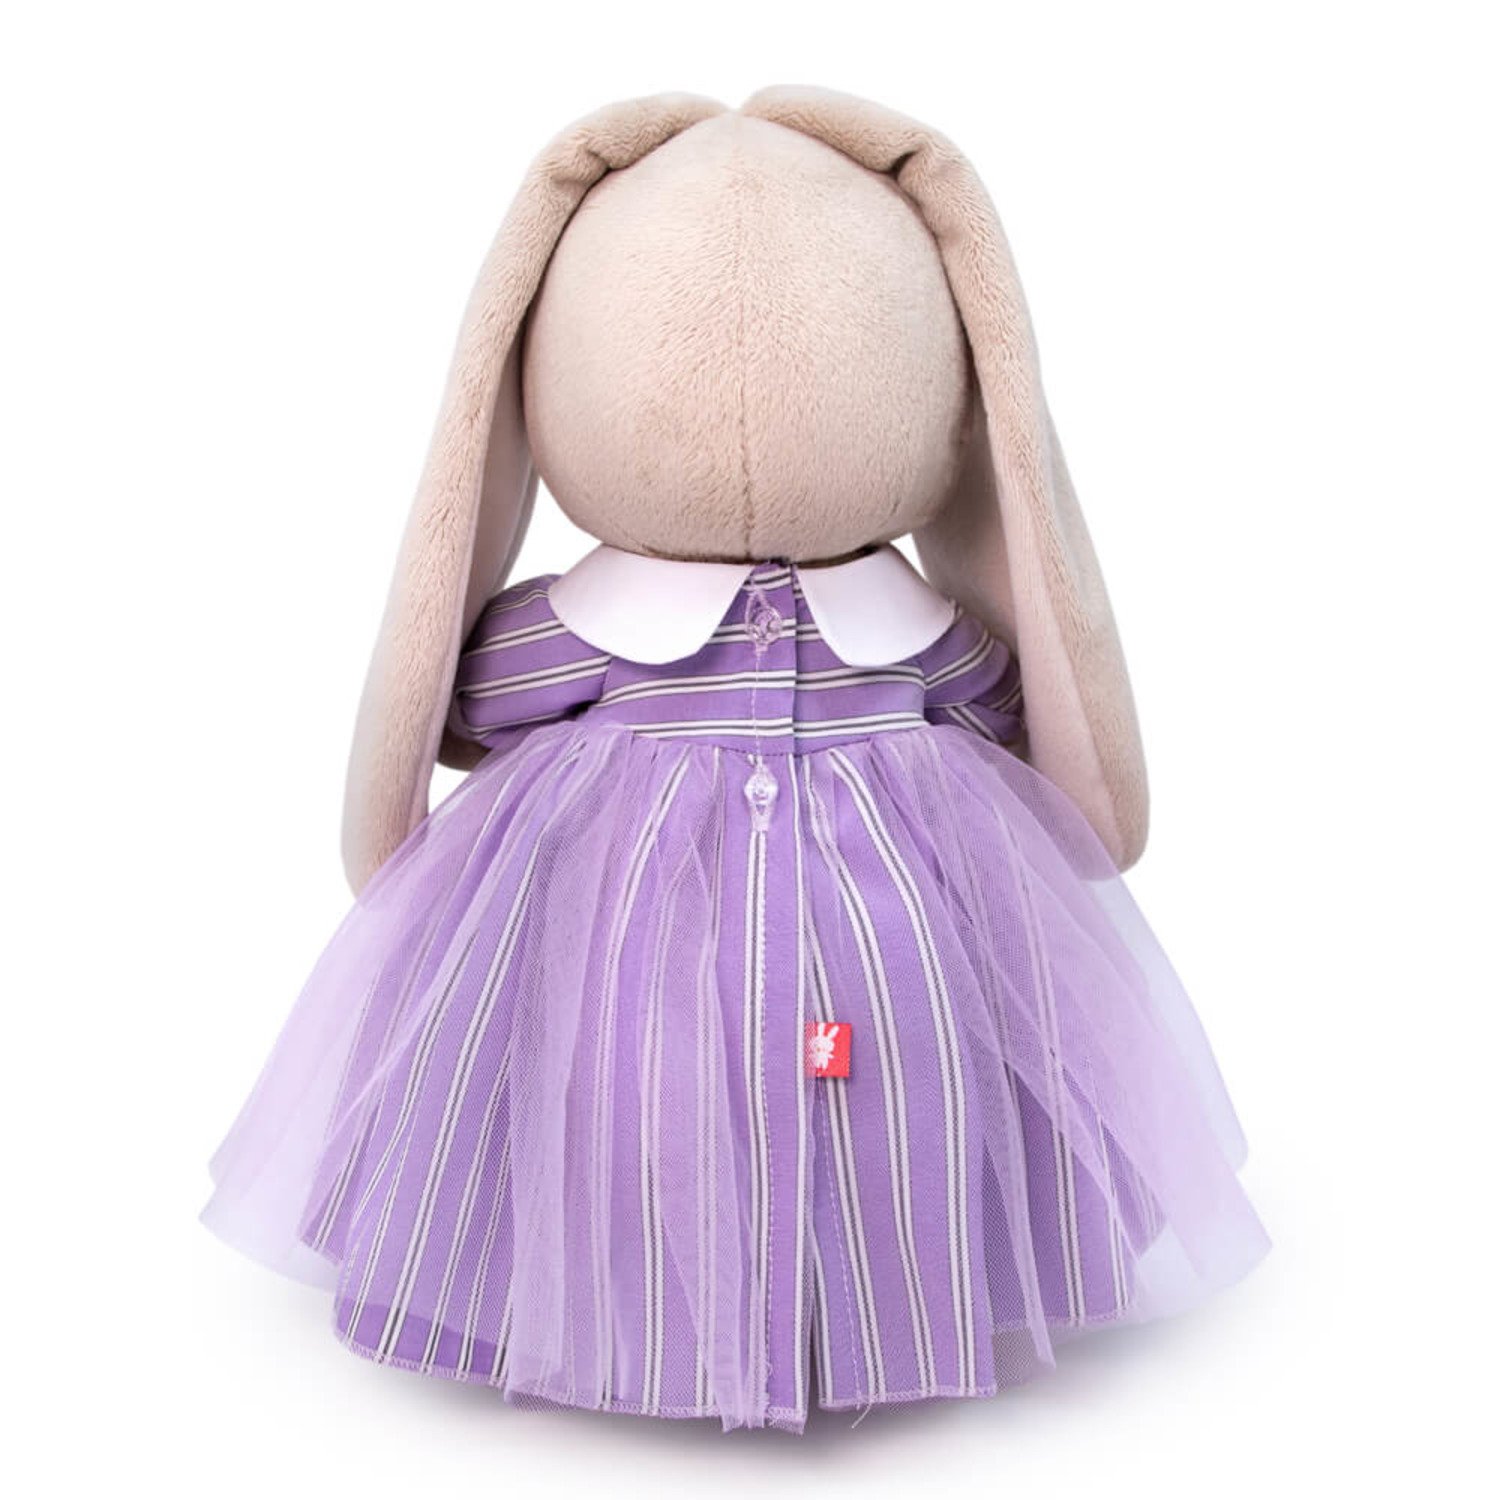 Мягкая игрушка "Зайка Ми в полосатом платье", 25 см., BUDI BASA StS-406